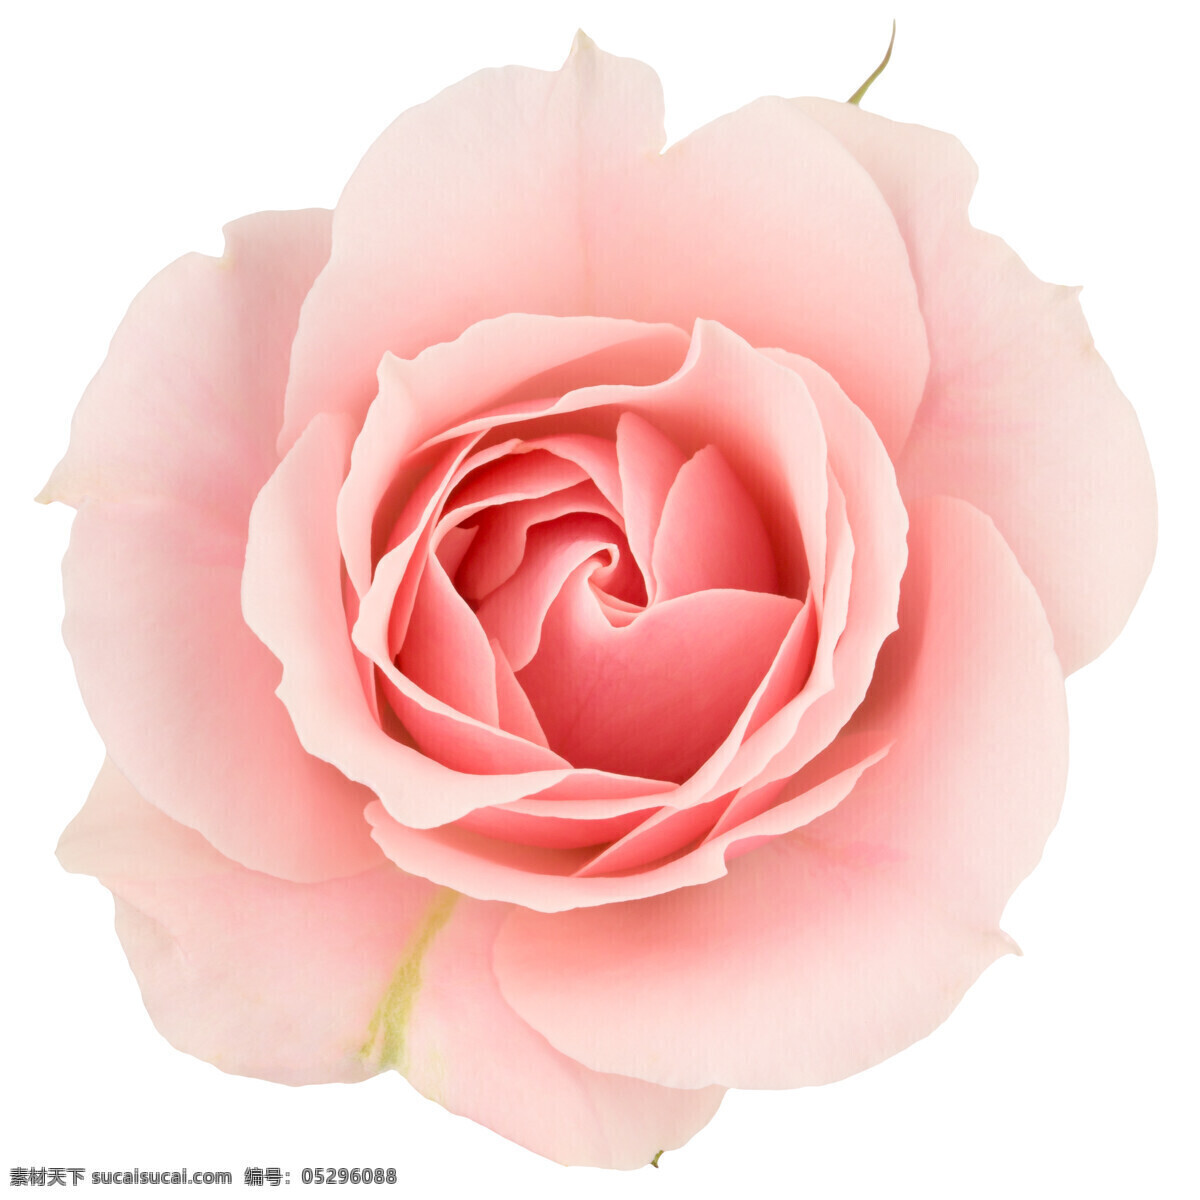 盛开的玫瑰花 植物 盛开花朵 花卉 玫瑰花 粉色 生物世界 花草